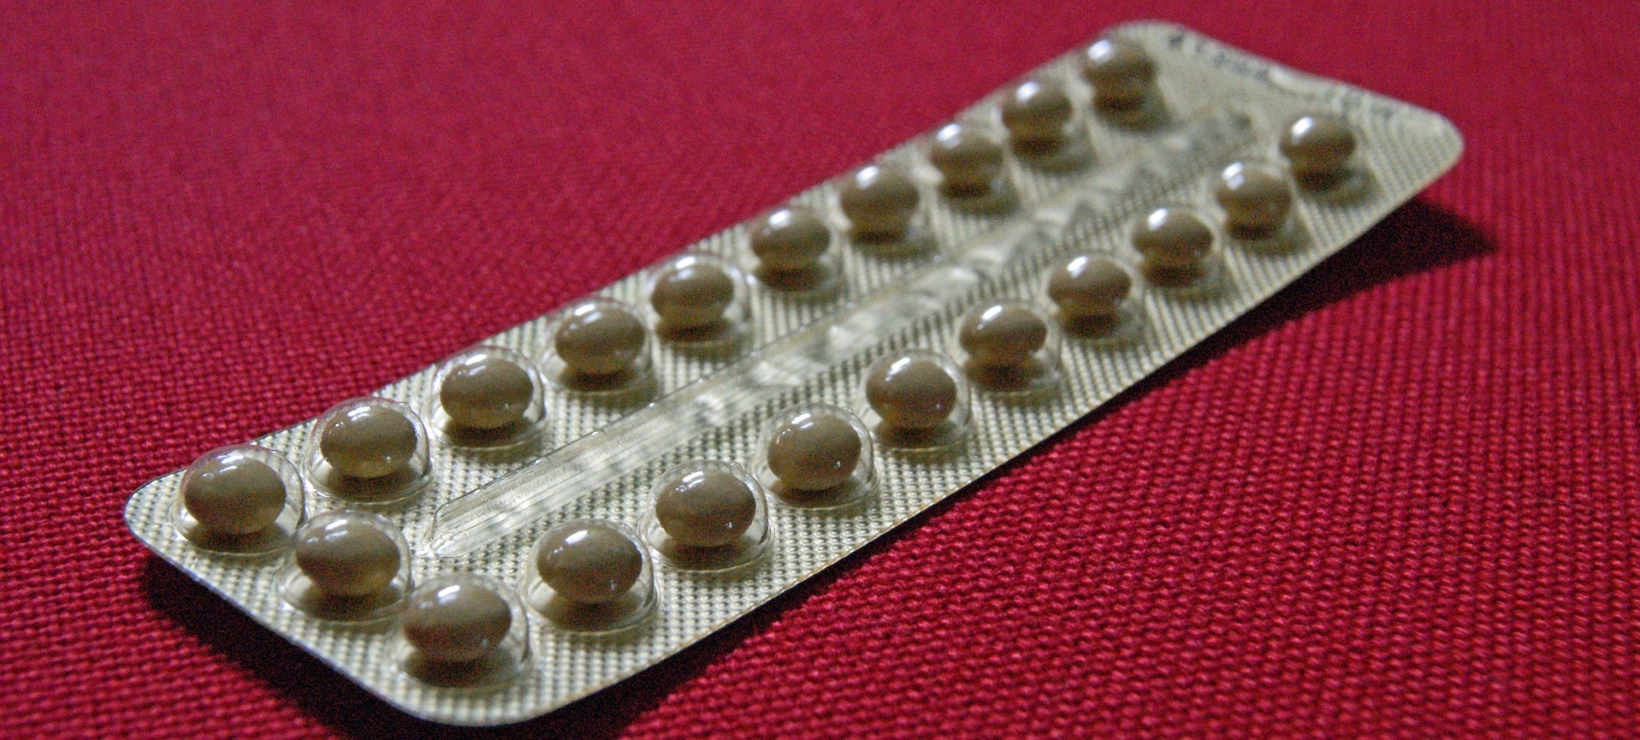 Maldita píldora (II): mitos y dudas sobre los anticonceptivos orales